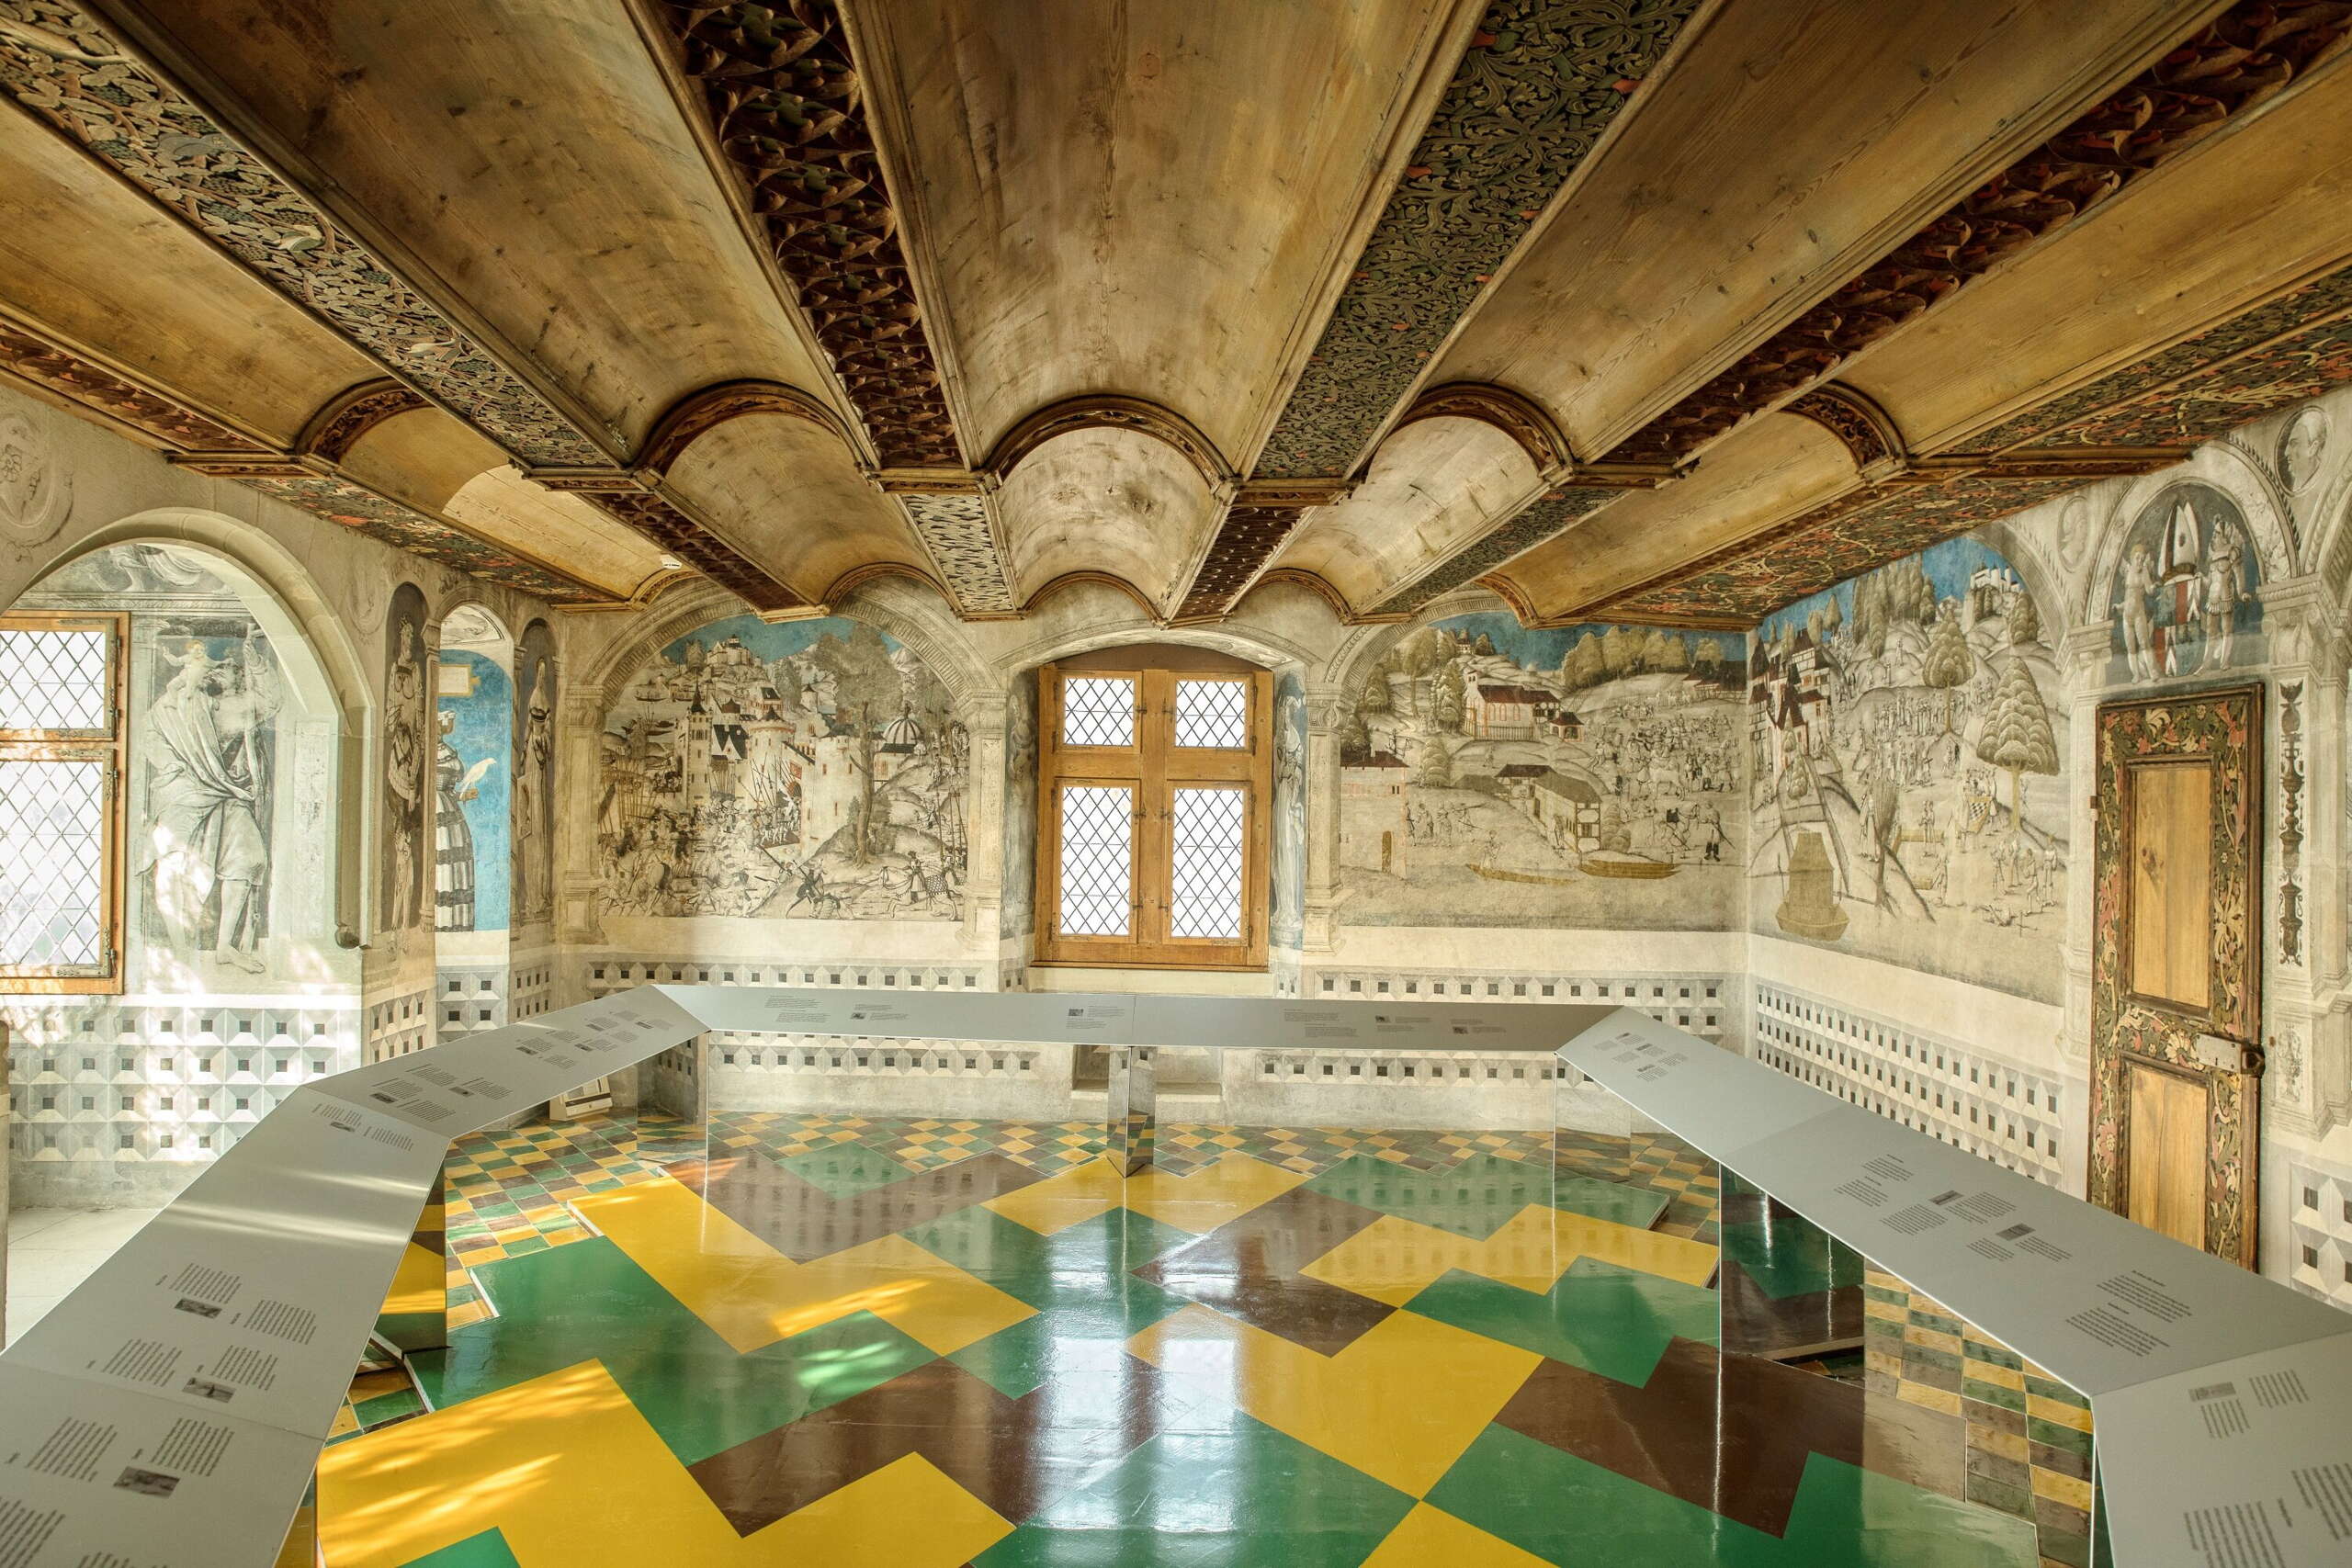 Zimmer im Kloster St. Georgen in Stein am Rhein. Wände sind mit kunstvollen Zeichnungen dekoriert, der Boden ist grün, gelb und braun geplättelt